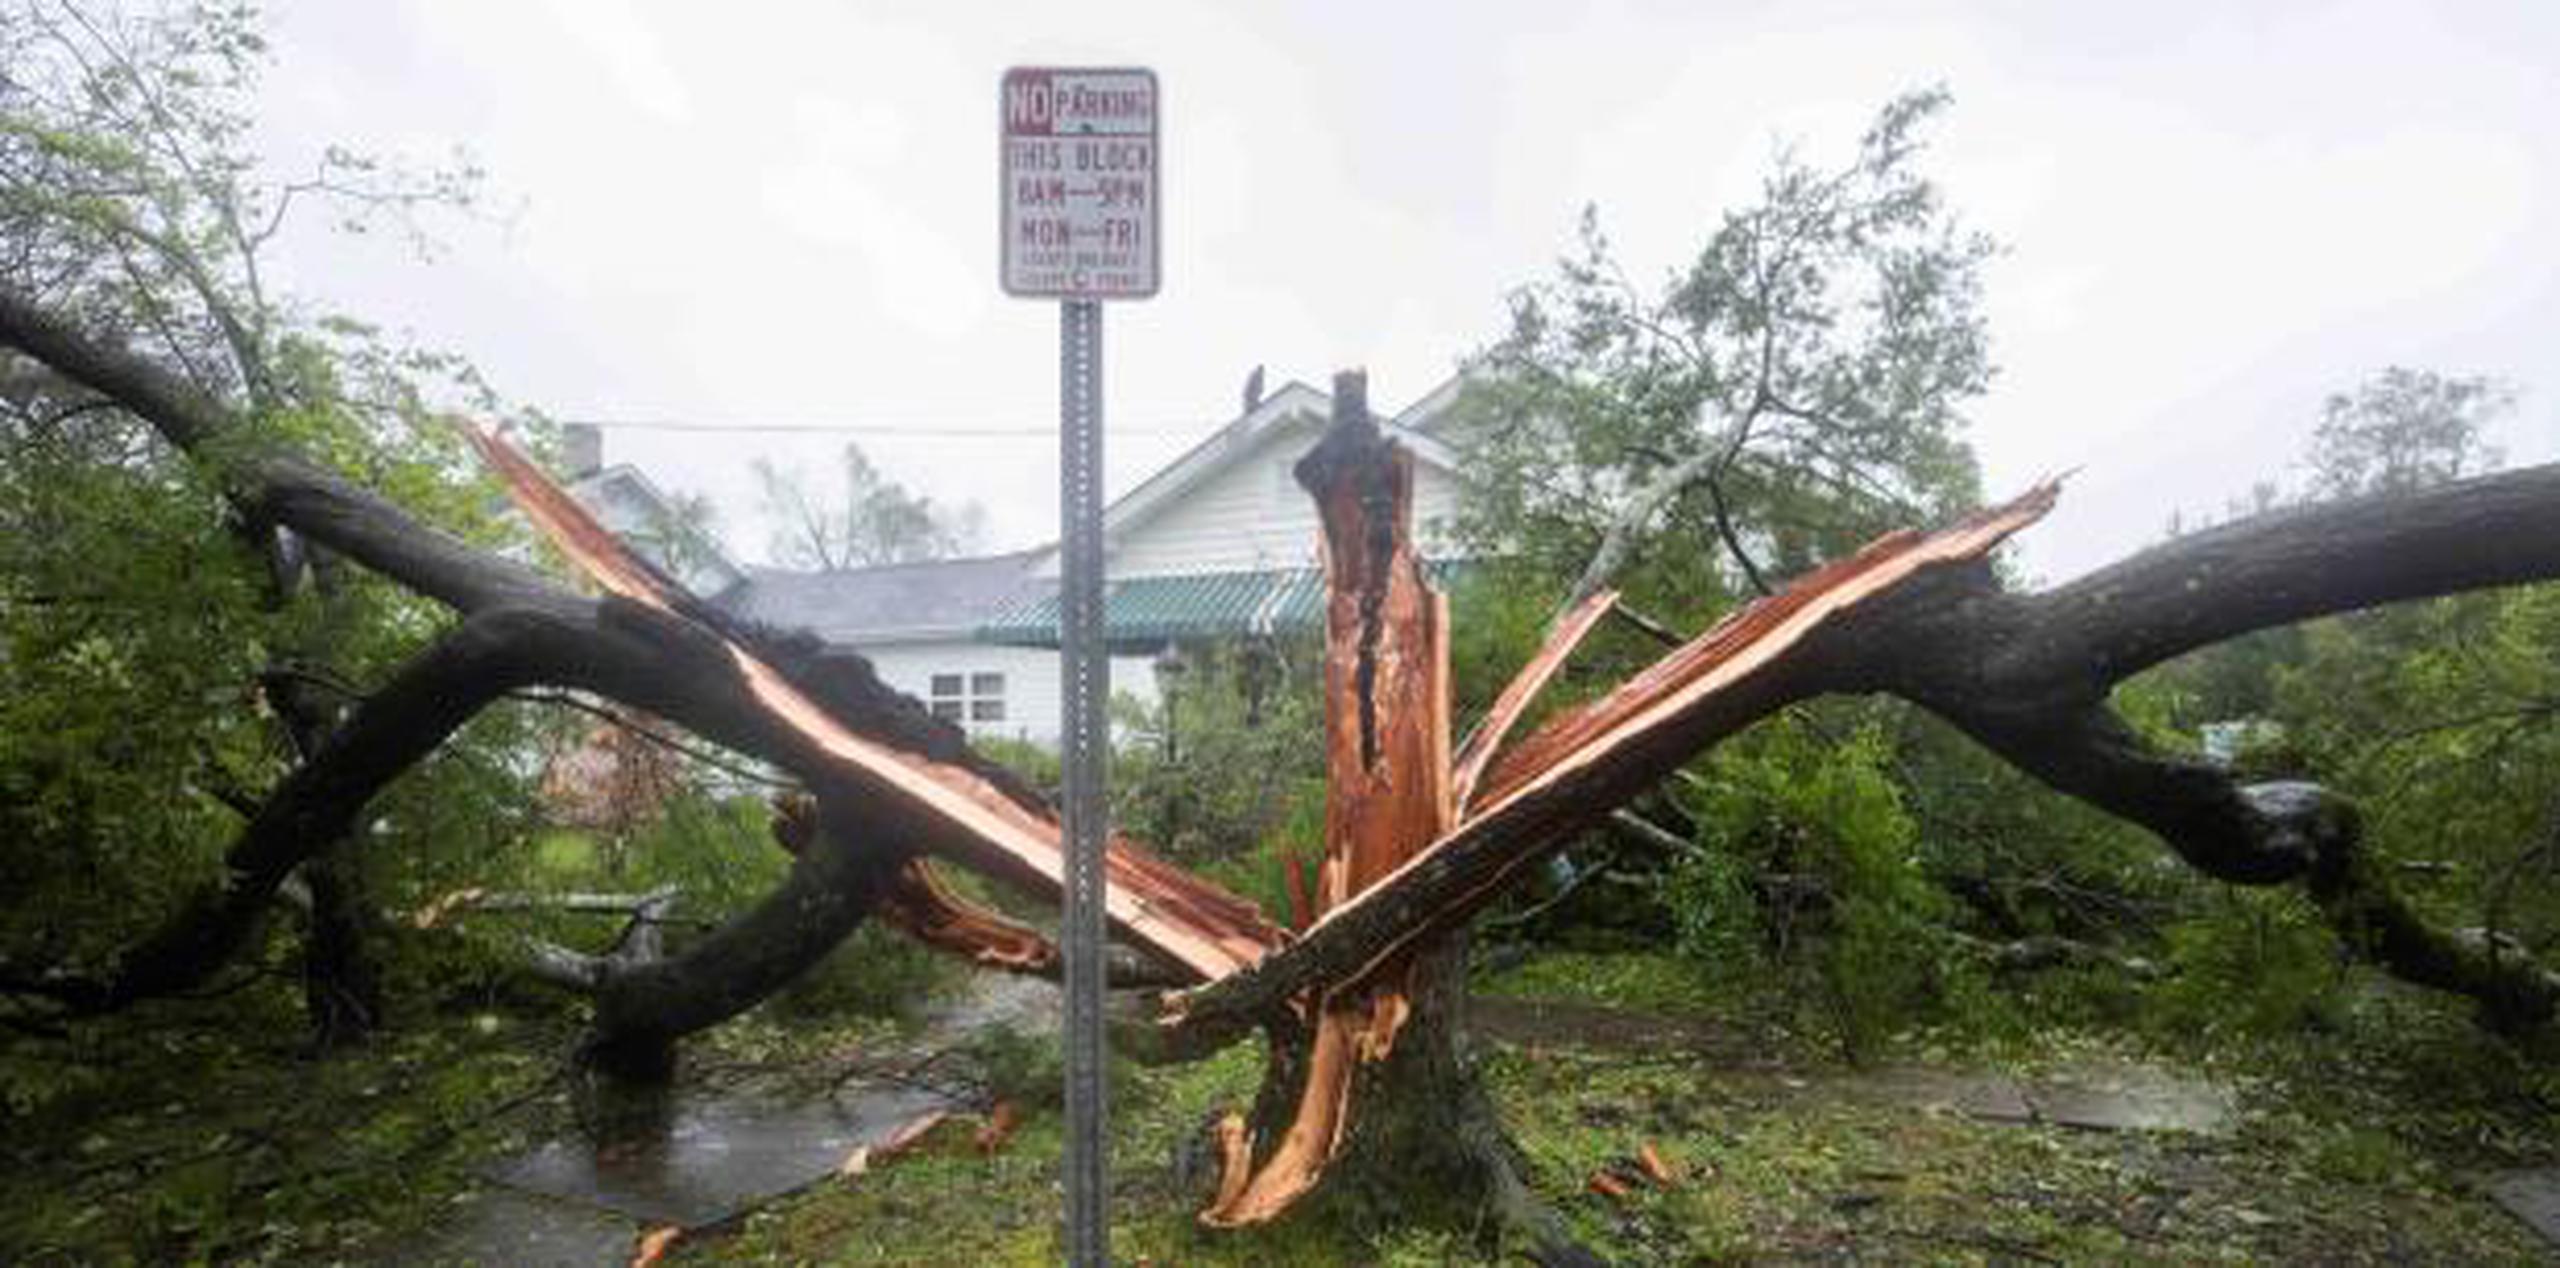 Un árbol partido tras el paso del huracán Florence, en Wilmington, Carolina del Norte. (EFE / Jim Lo Scalzo)